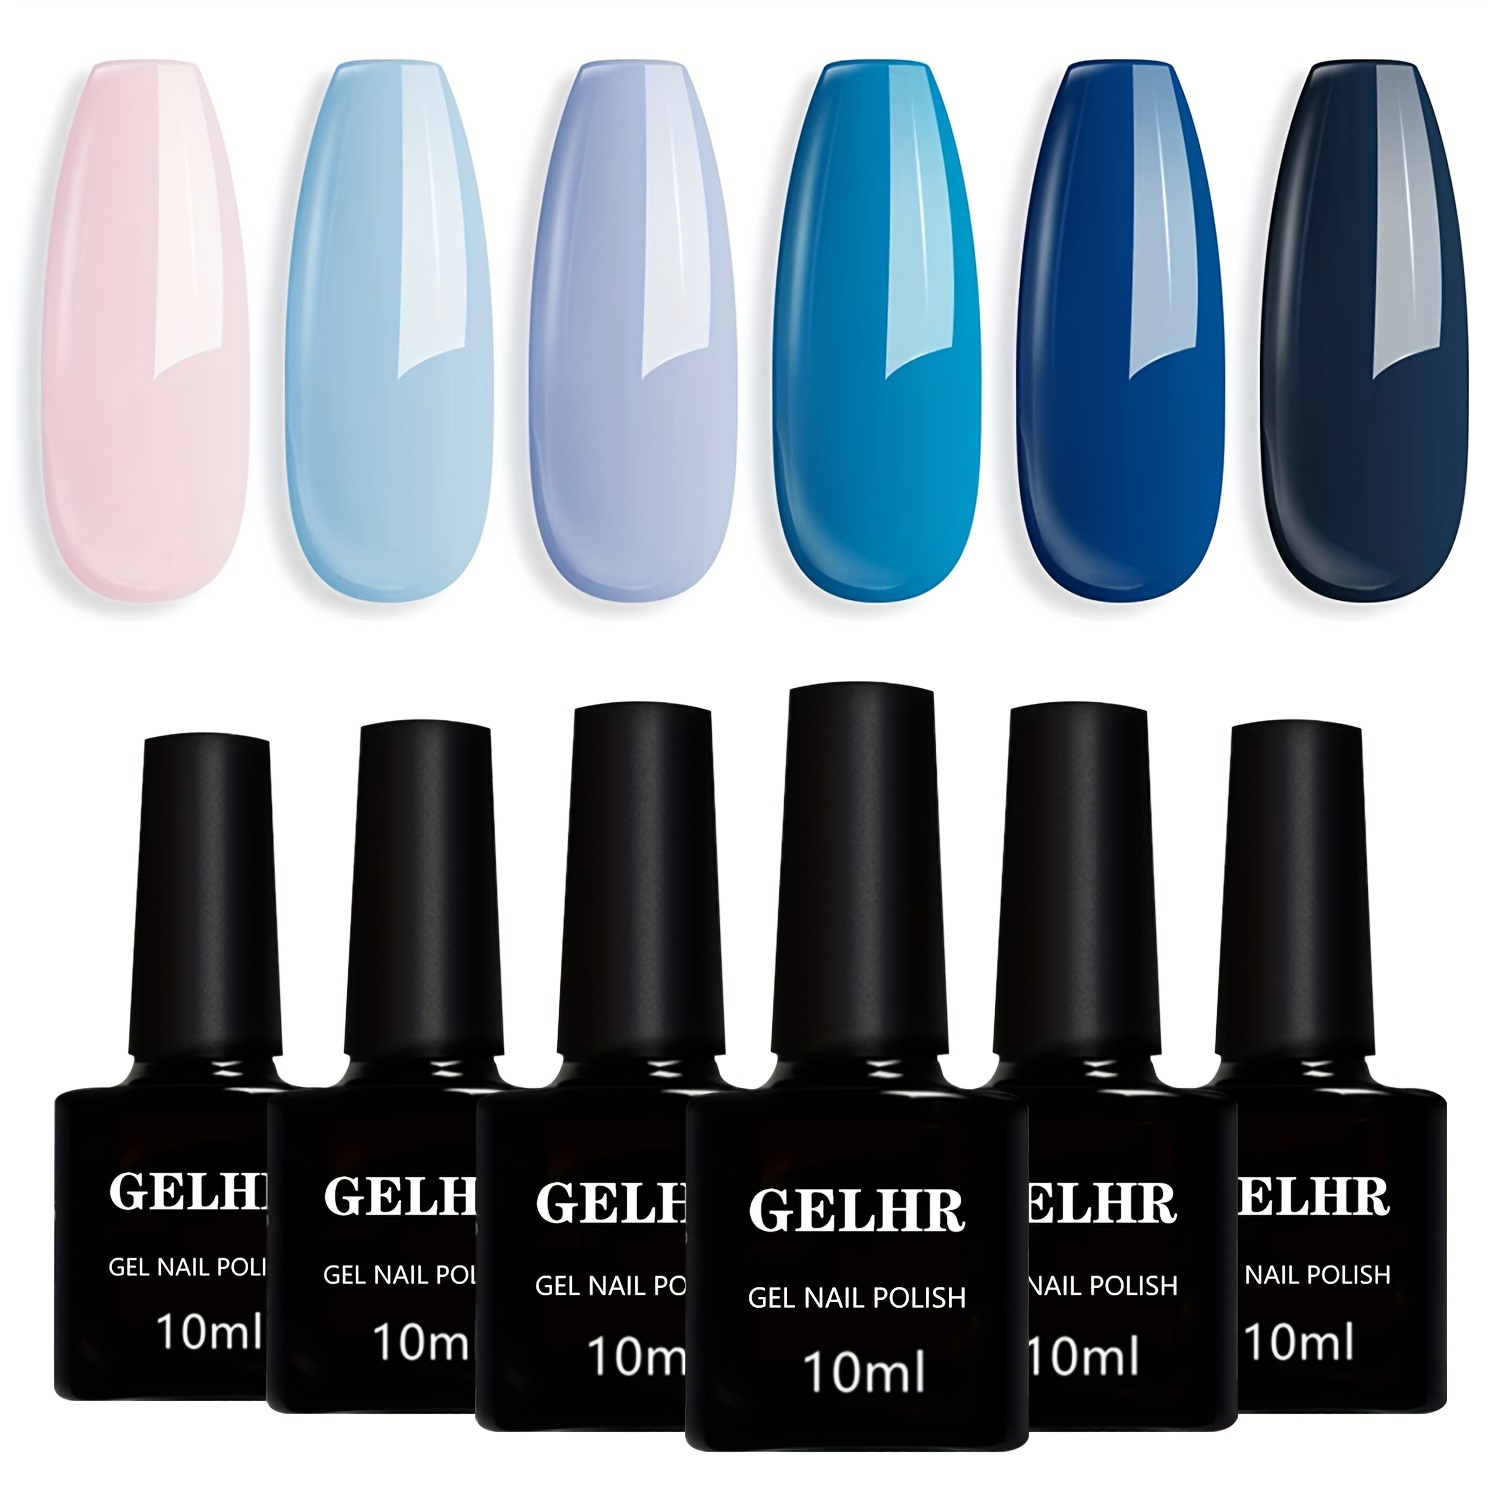 superchic nail polish - Colors - Blue - Page 1 - SuperChic Lacquer